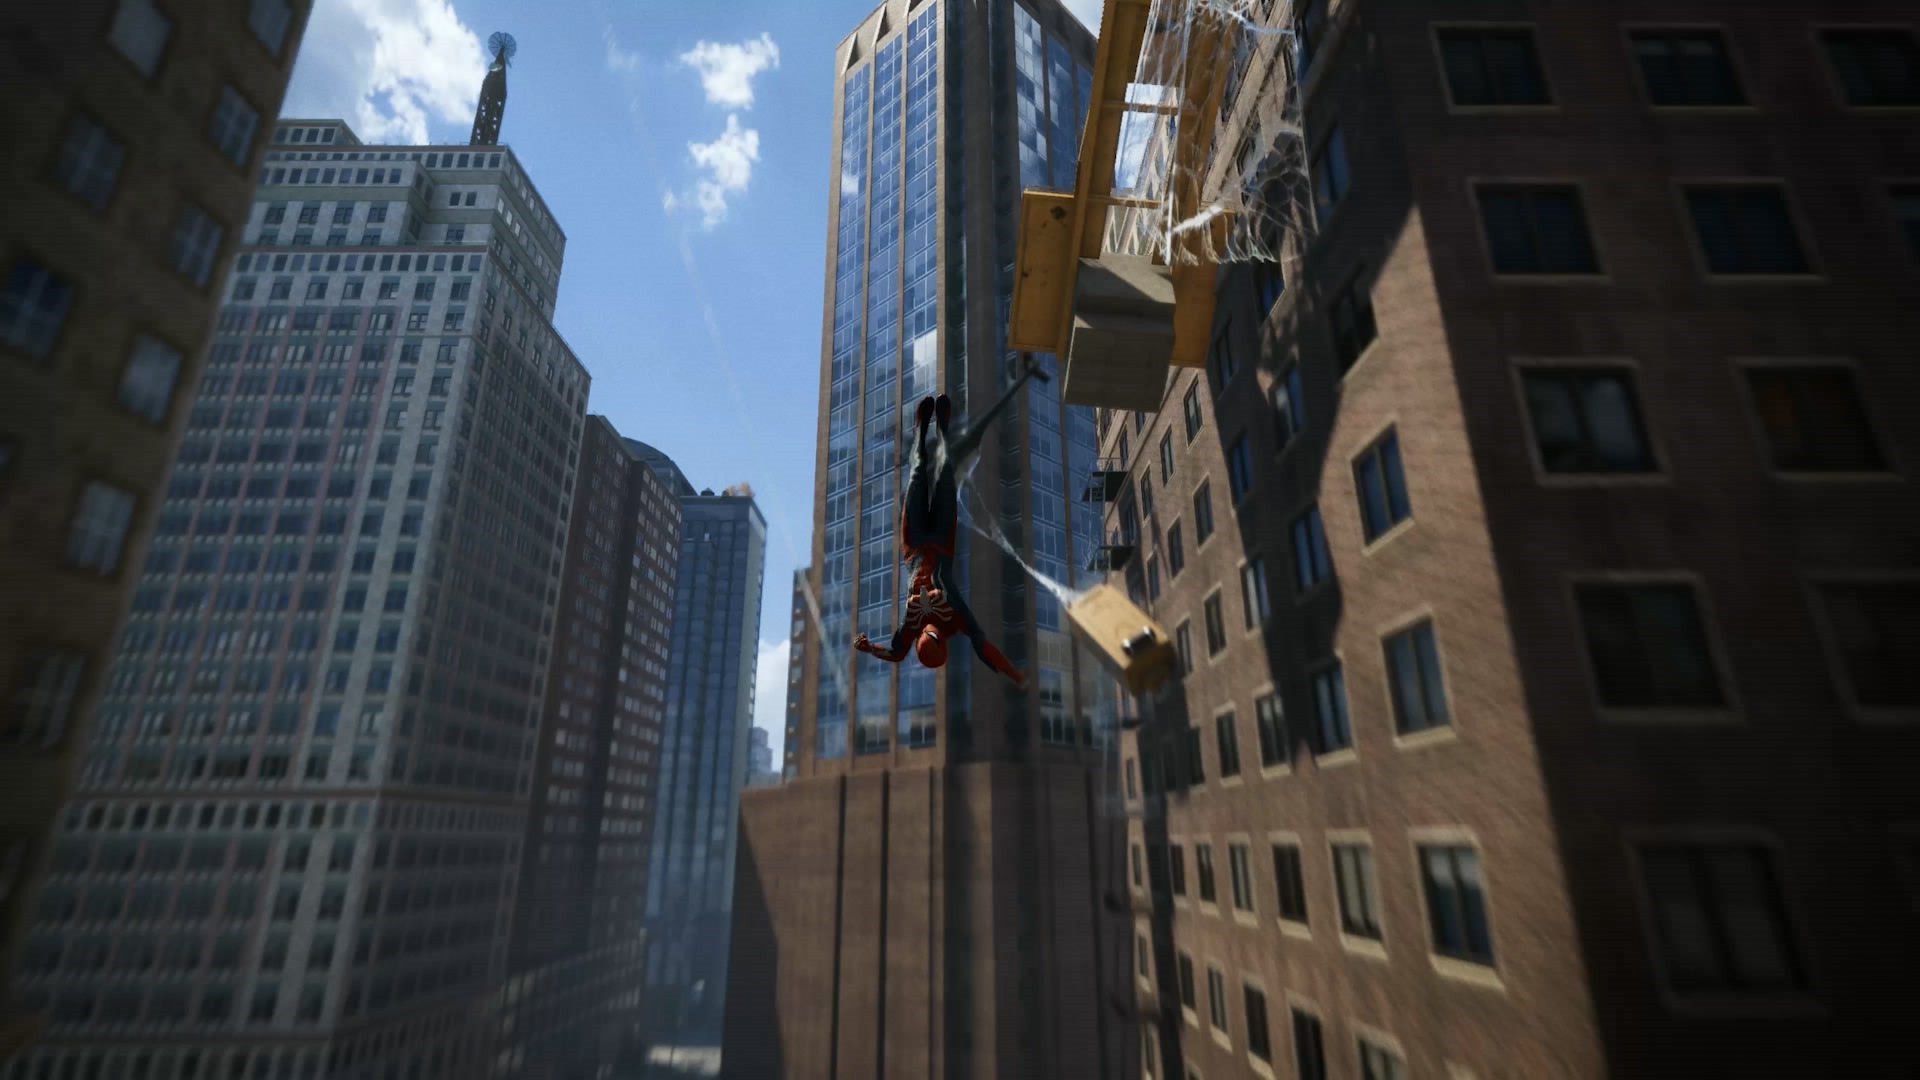 PS4版《蜘蛛侠》游戏分辨率提升至4K 开放式沙盒地图  新闻资讯  第2张